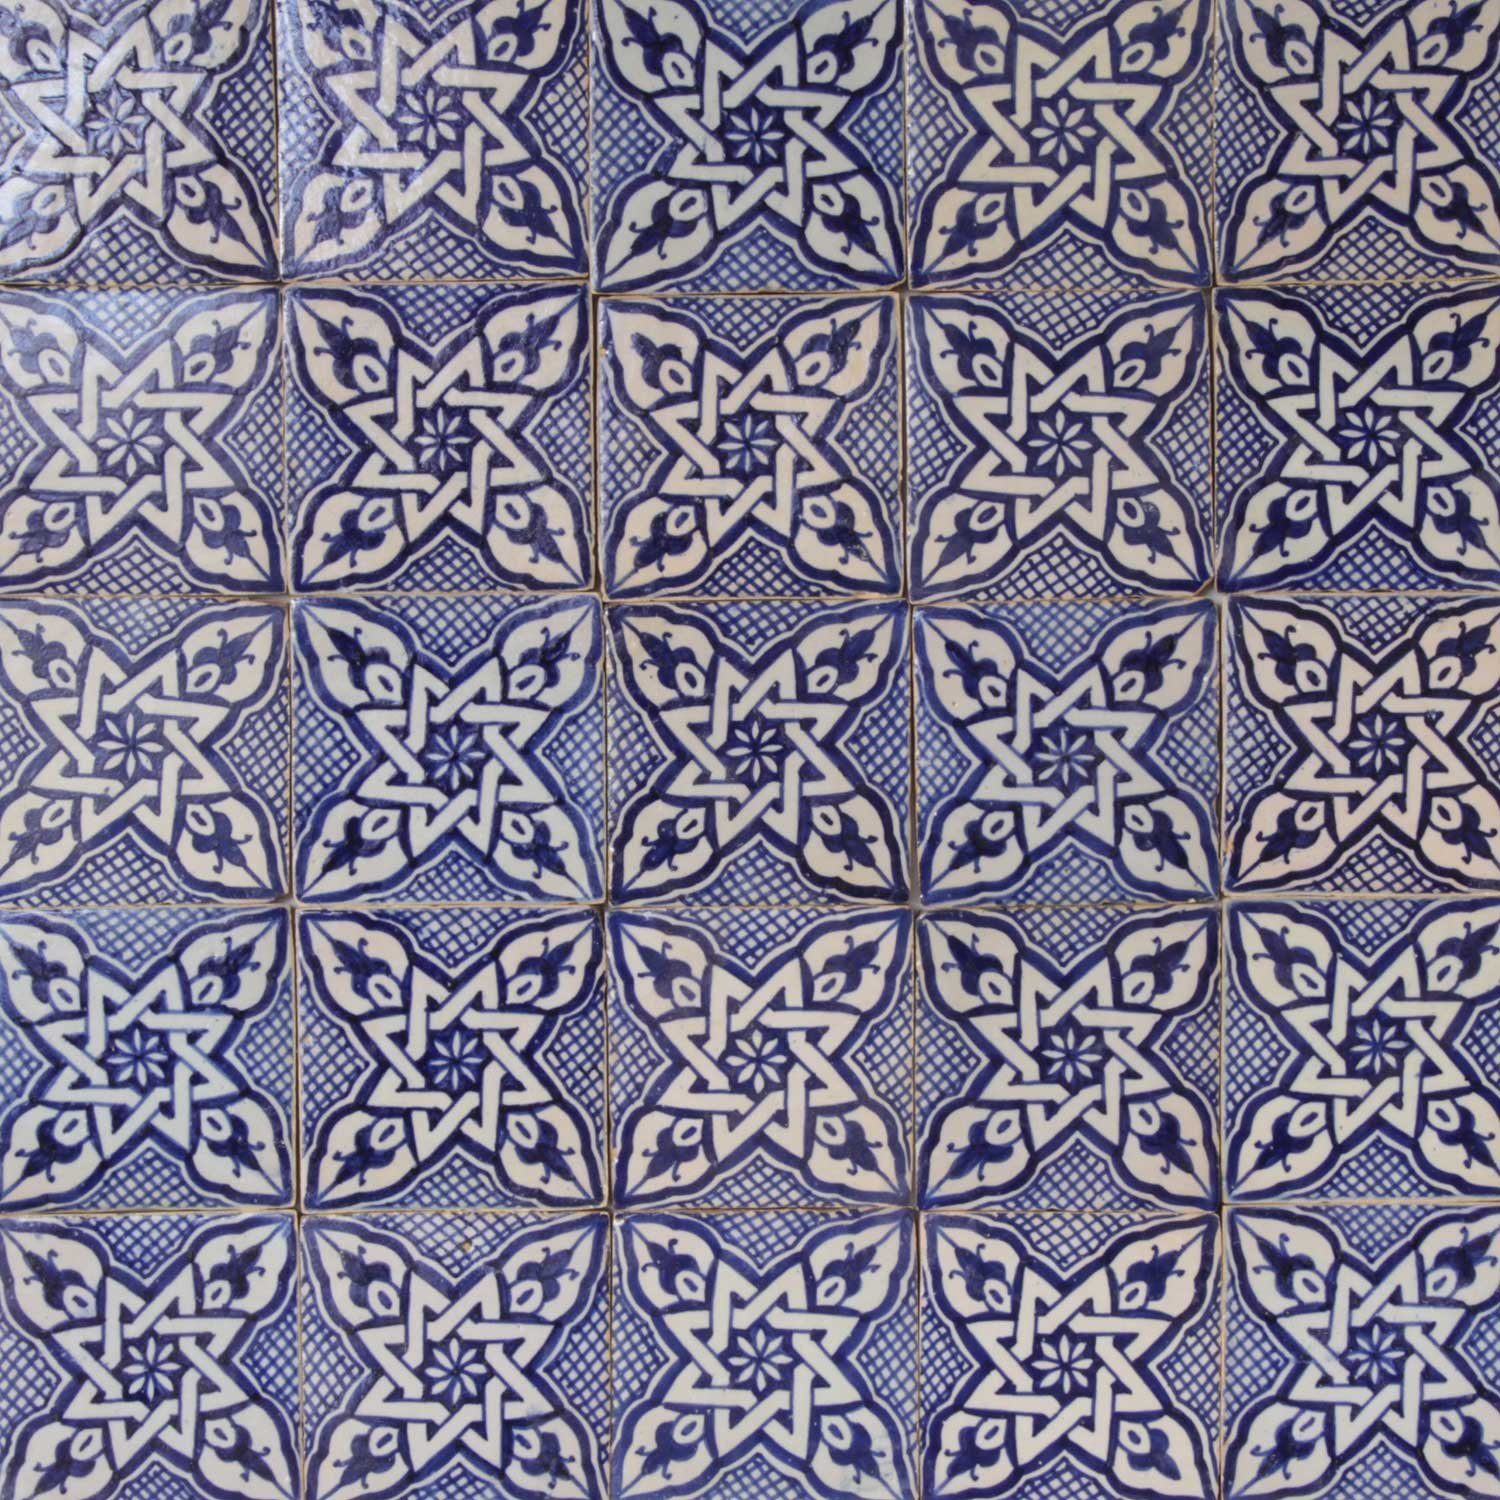 Blau 10 cm handbemalte Ton Beige Marokkanische schöne Keramikfliese x Casa und Kunsthandwerk aus Küche FL7240, Marokko Dusche für Wandfliese 10 Daya Moro Badezimmer, Wandfliese